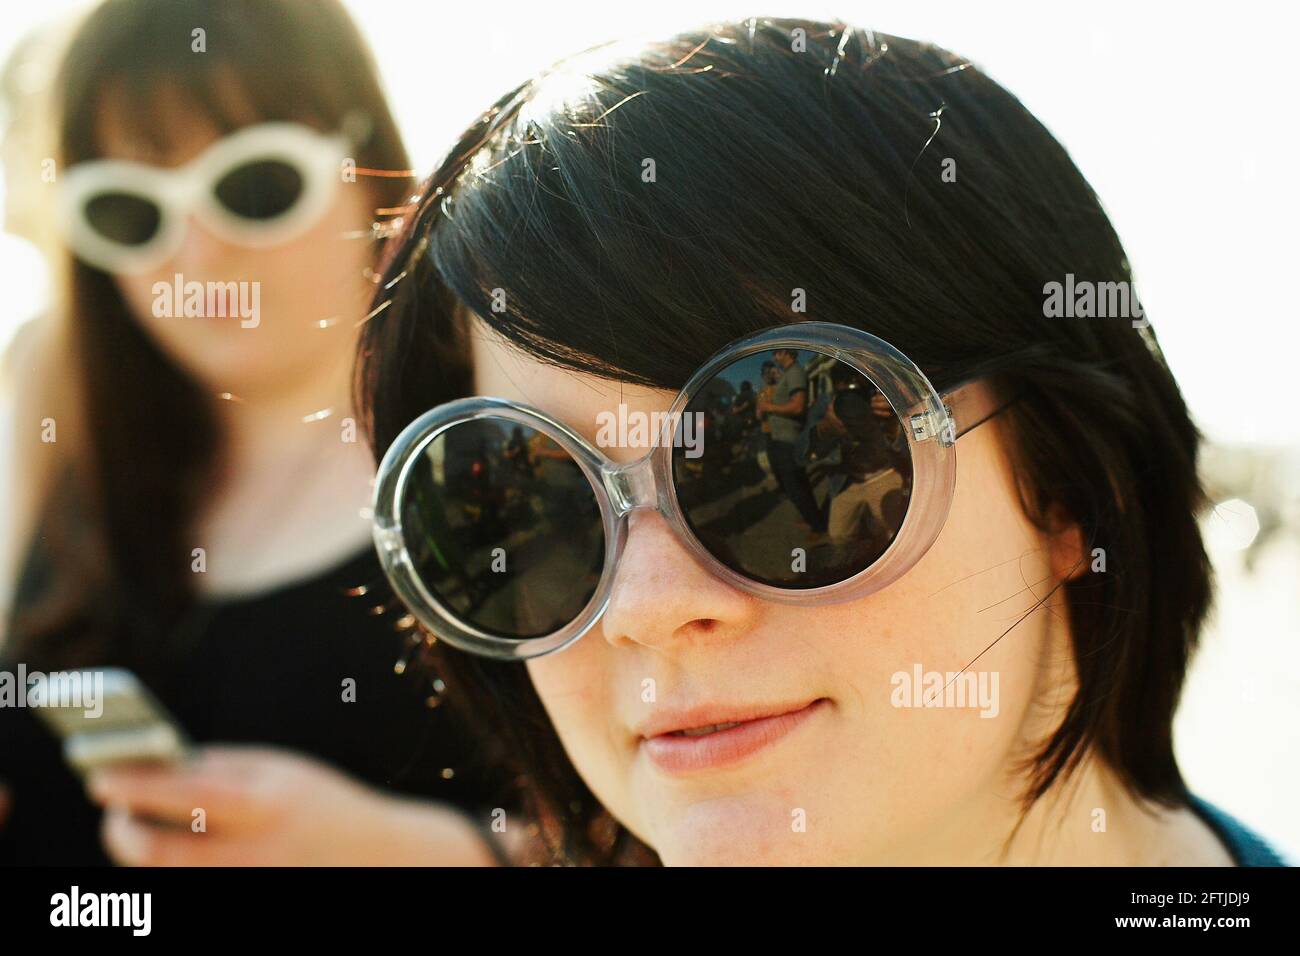 GRANDE-BRETAGNE / Angleterre / Brighton / Portrait de deux adolescentes posant dans des lunettes de soleil. Banque D'Images